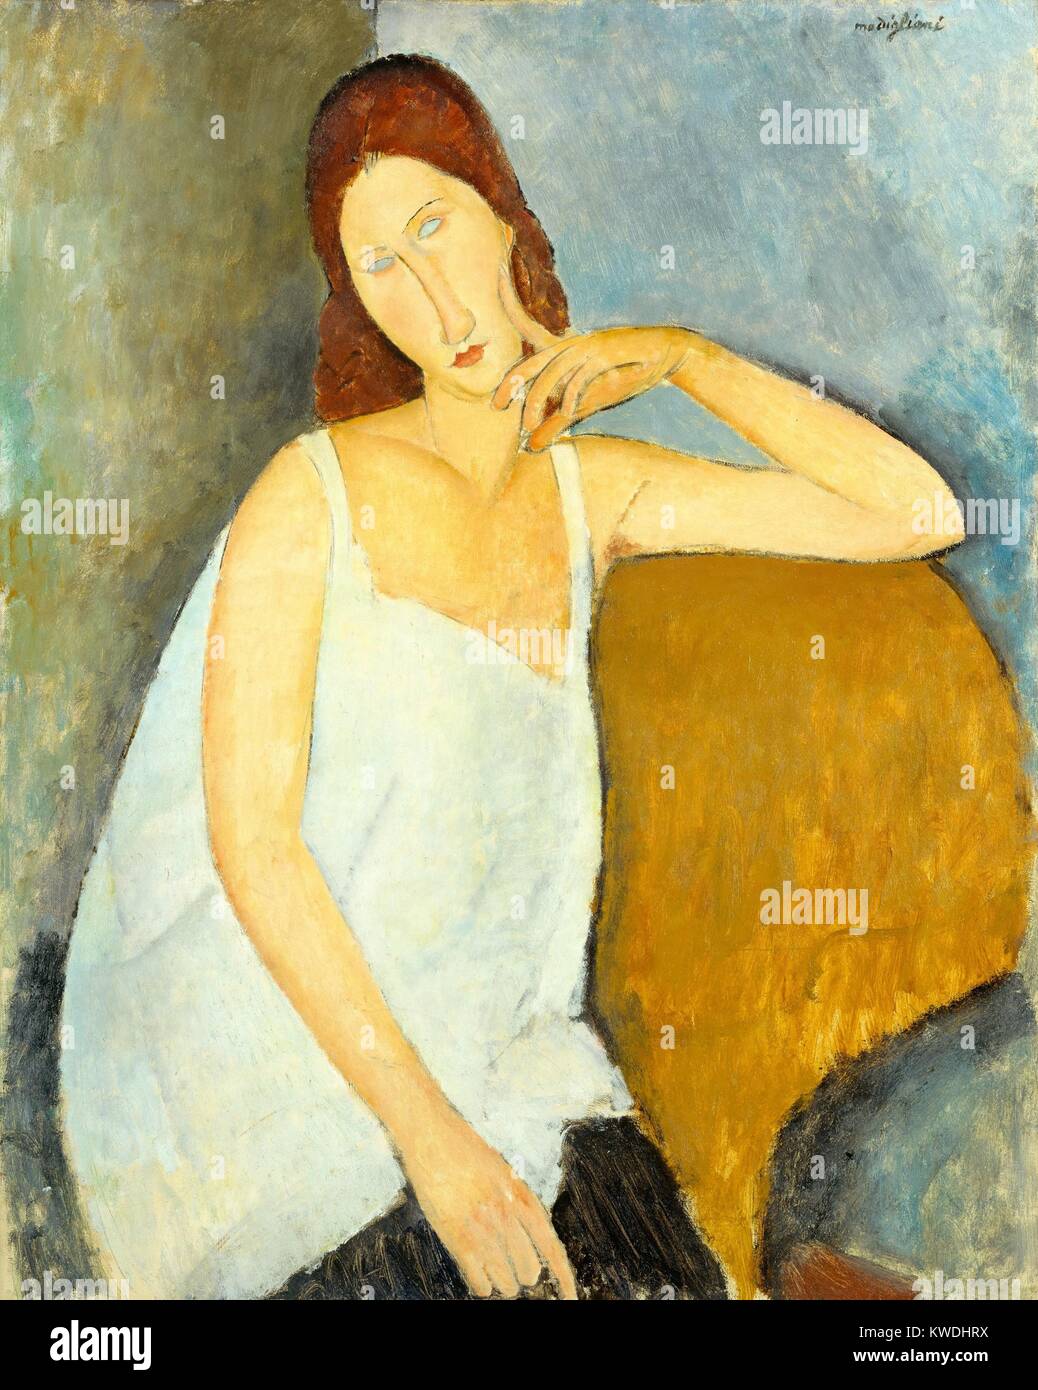 JEANNE HEBUTERNE, von Amedeo Modigliani, 1919, Italienisch modernistischen Malerei, Öl auf Leinwand. Hebuterne, die Künstler der 21-jährige Herrin, wurde schwanger mit ihrem zweiten Kind. Dieses Portrait ist bemalt mit Modigliani Stilisierungen und Dehnungen (BSLOC 2017 7 16) Stockfoto